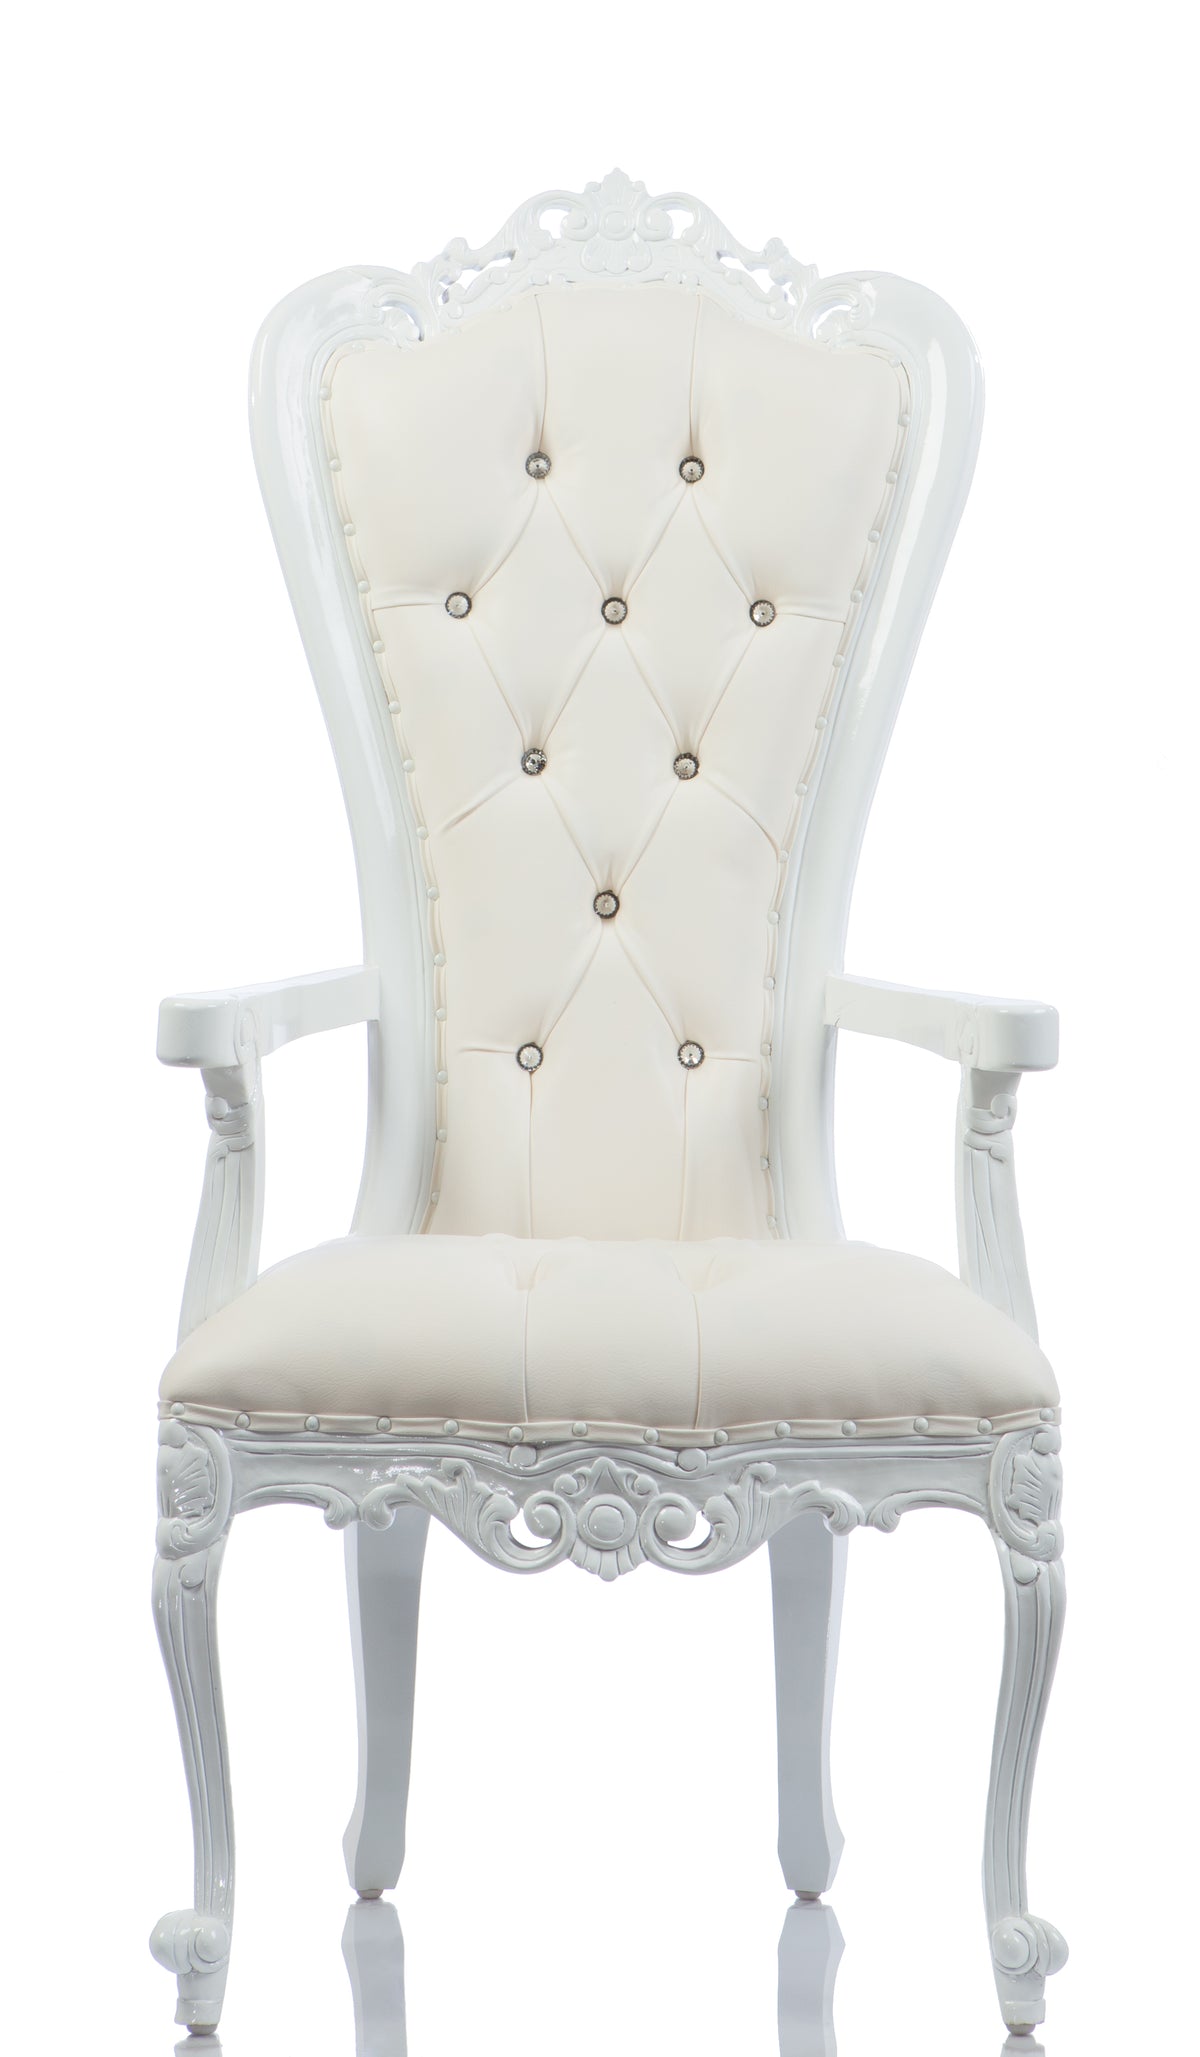 Vintage "White as Snow" Arm Chair Throne White/White (West Coast)